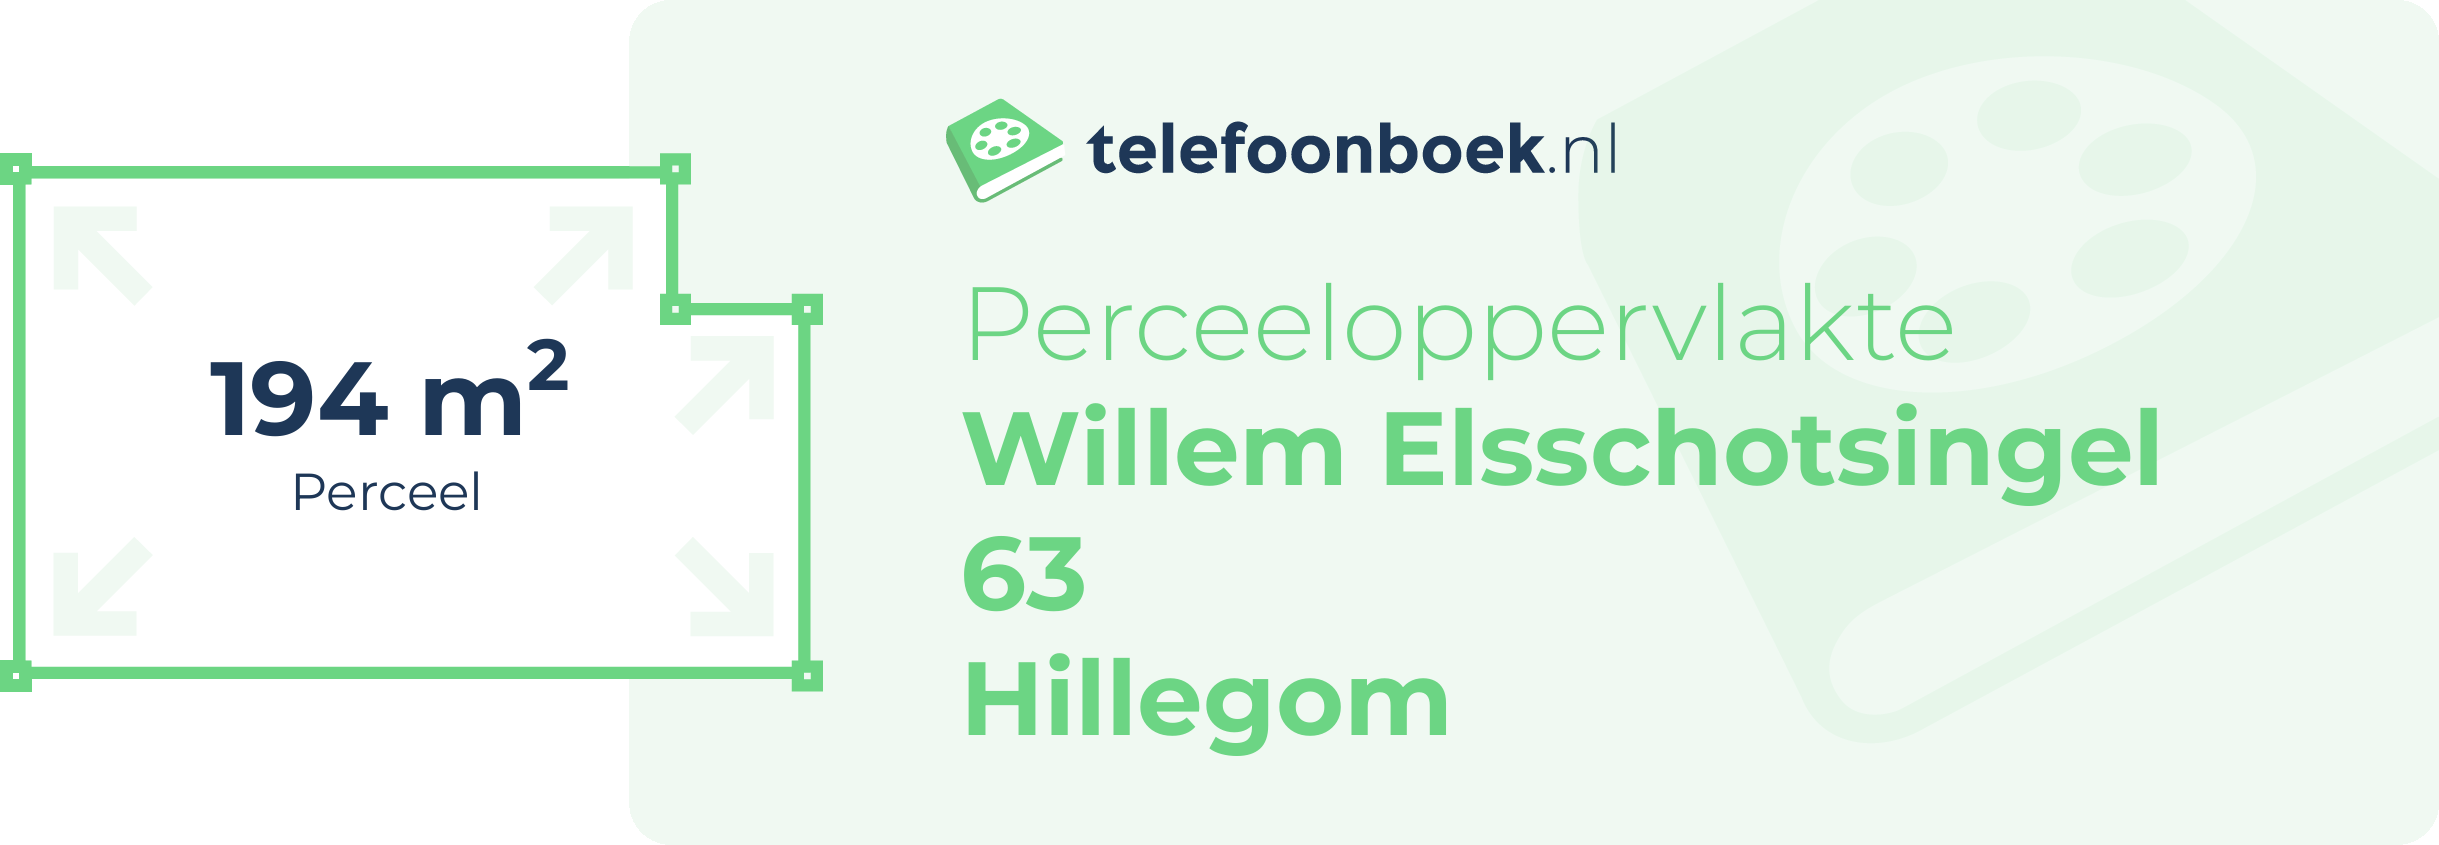 Perceeloppervlakte Willem Elsschotsingel 63 Hillegom